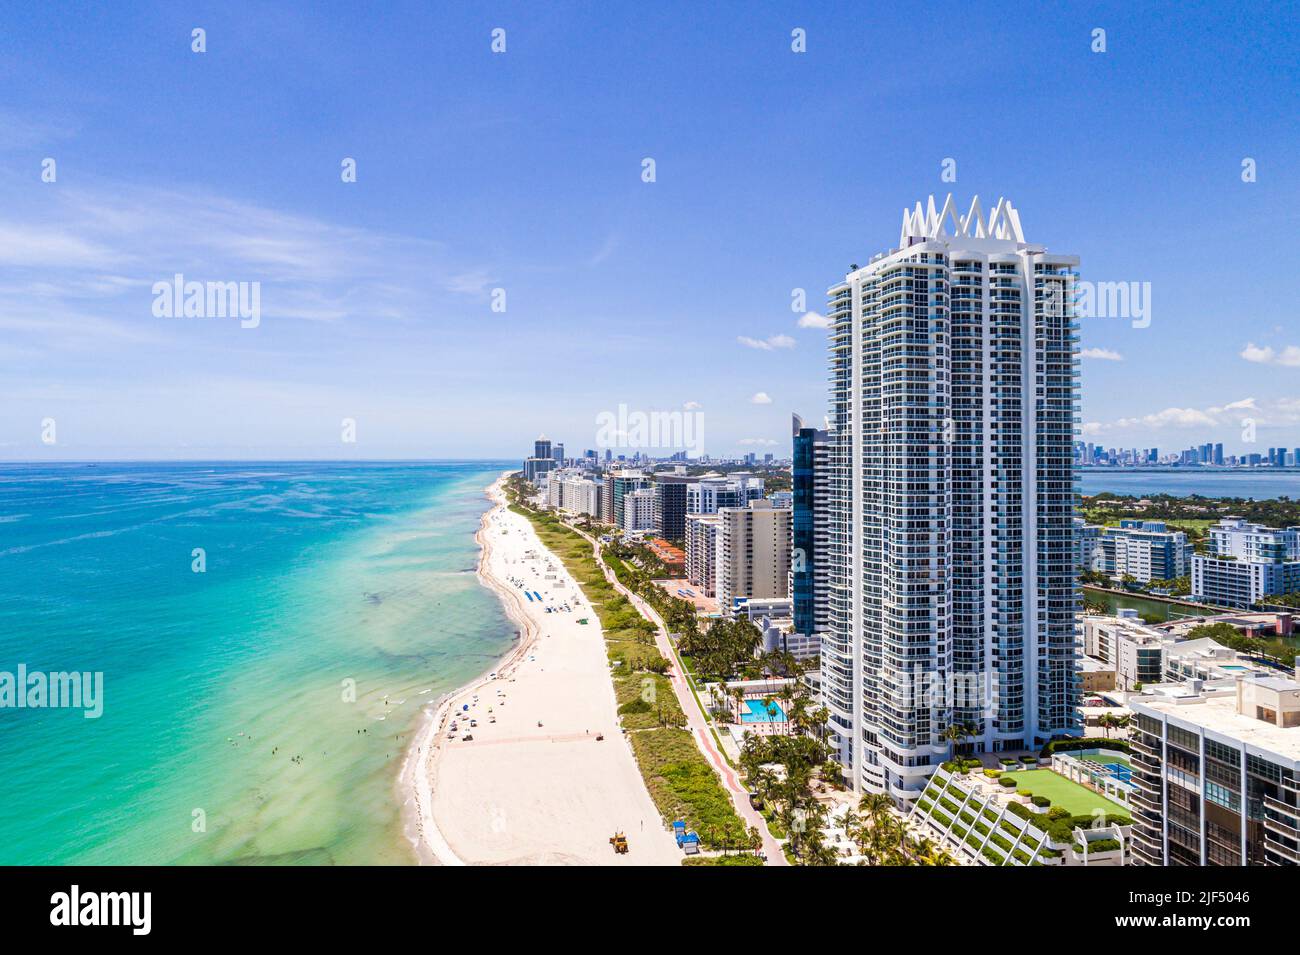 Miami Beach Florida, vista aerea dall'alto, edifici condominali fronte mare fronte oceano, spiaggia pubblica costa Oceano Atlantico Foto Stock